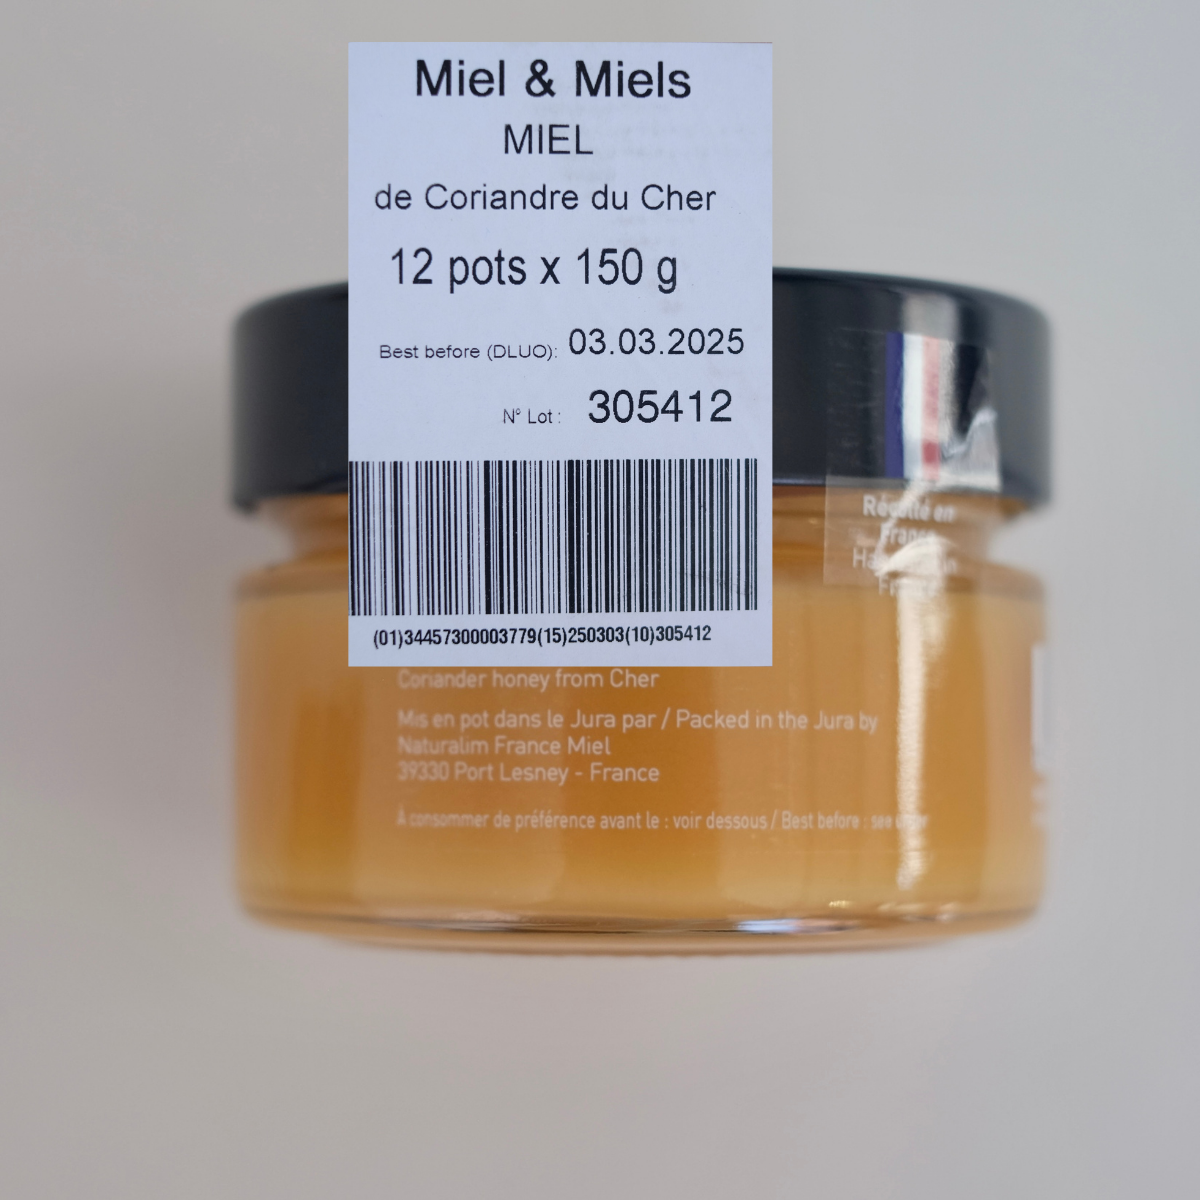 Miel et Miels® - Korianderhonig, in Frankreich geerntet, im Cher (150g)